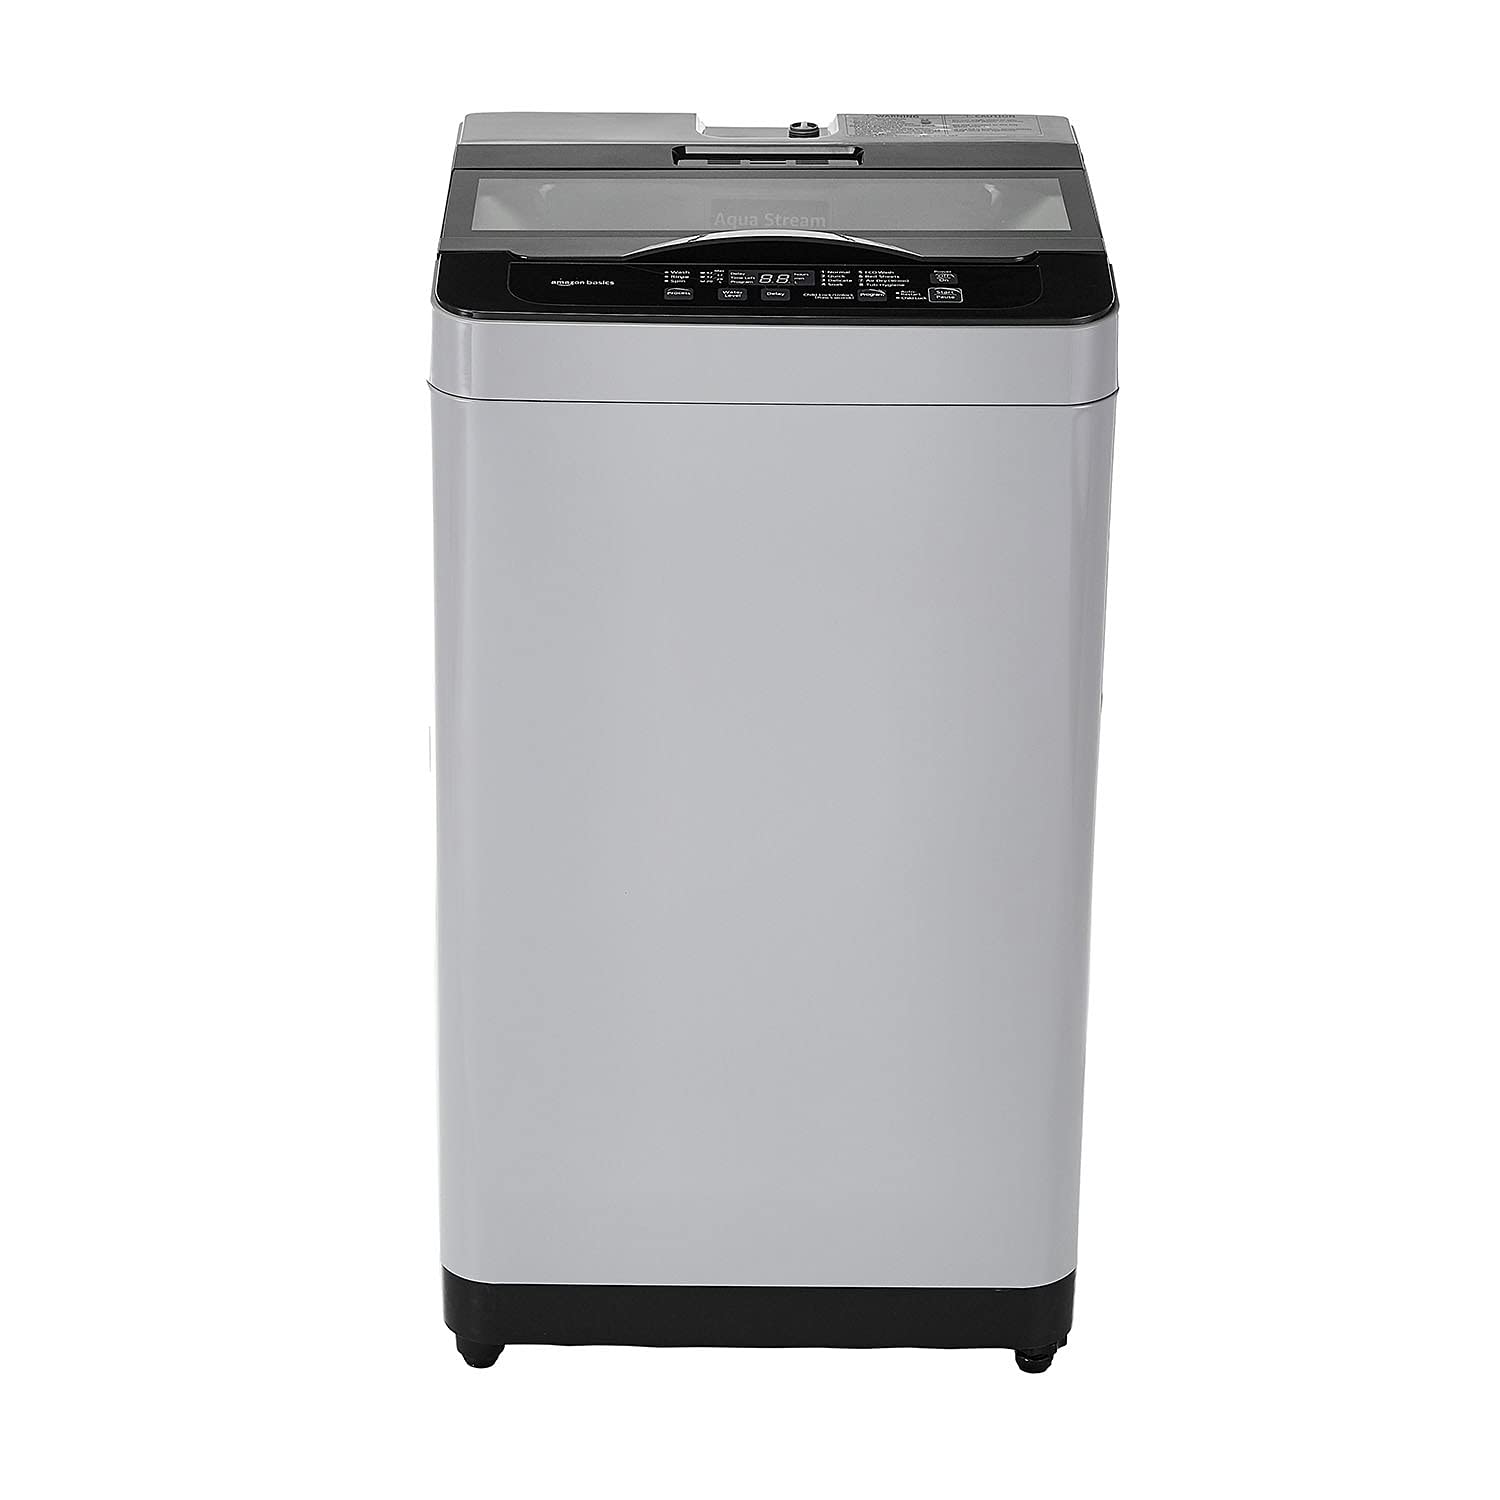 Amazon Basics Fully Automatic Top Loading Washing Machine